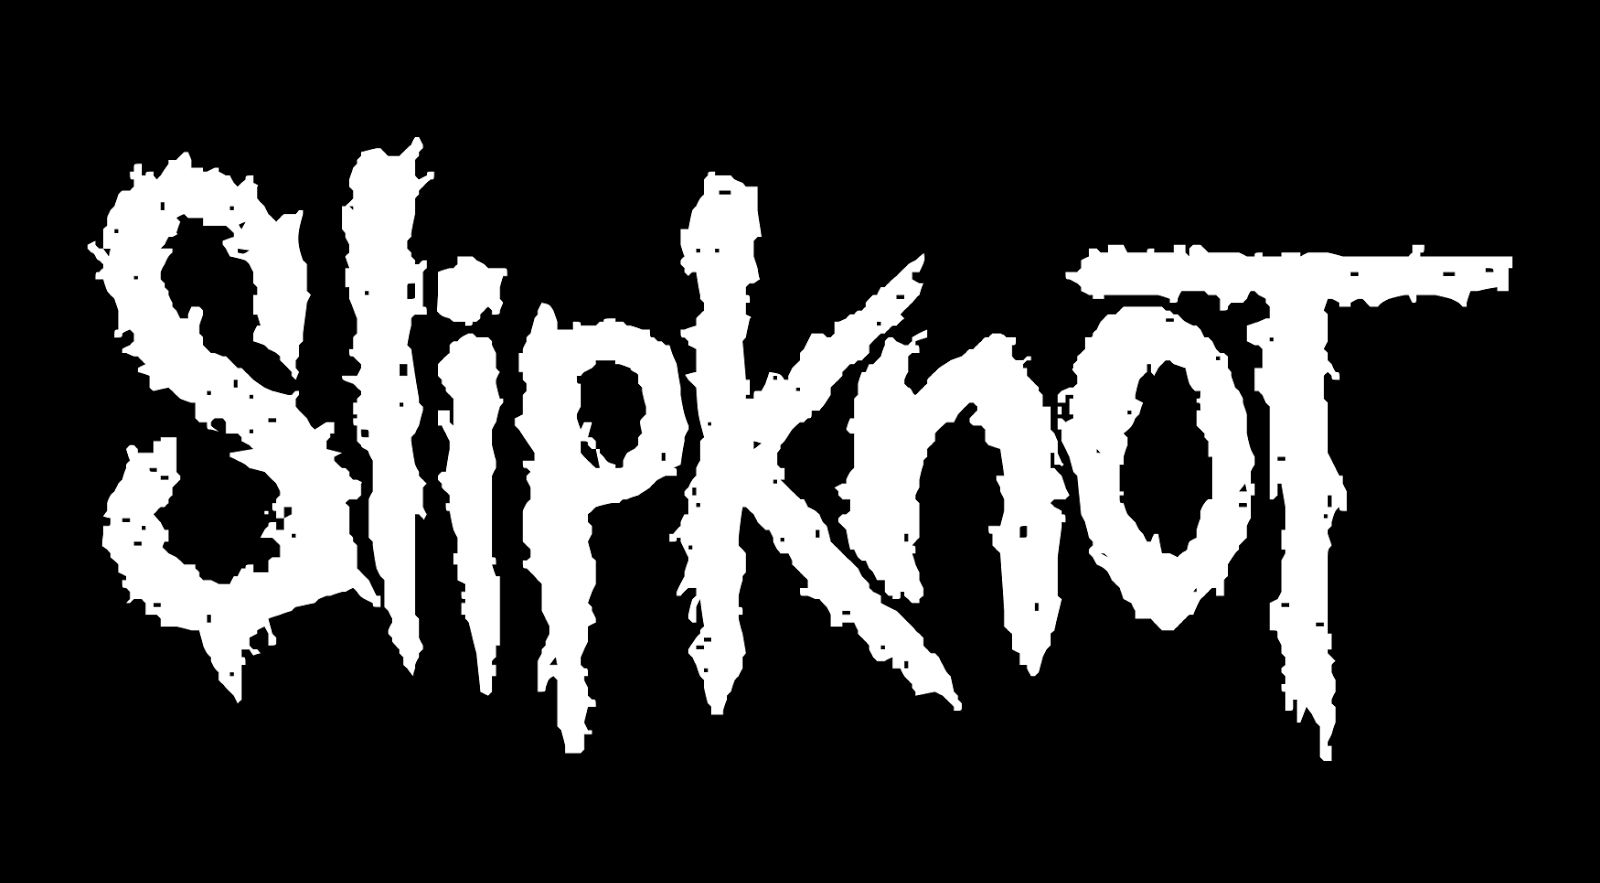 slipknot logo 2